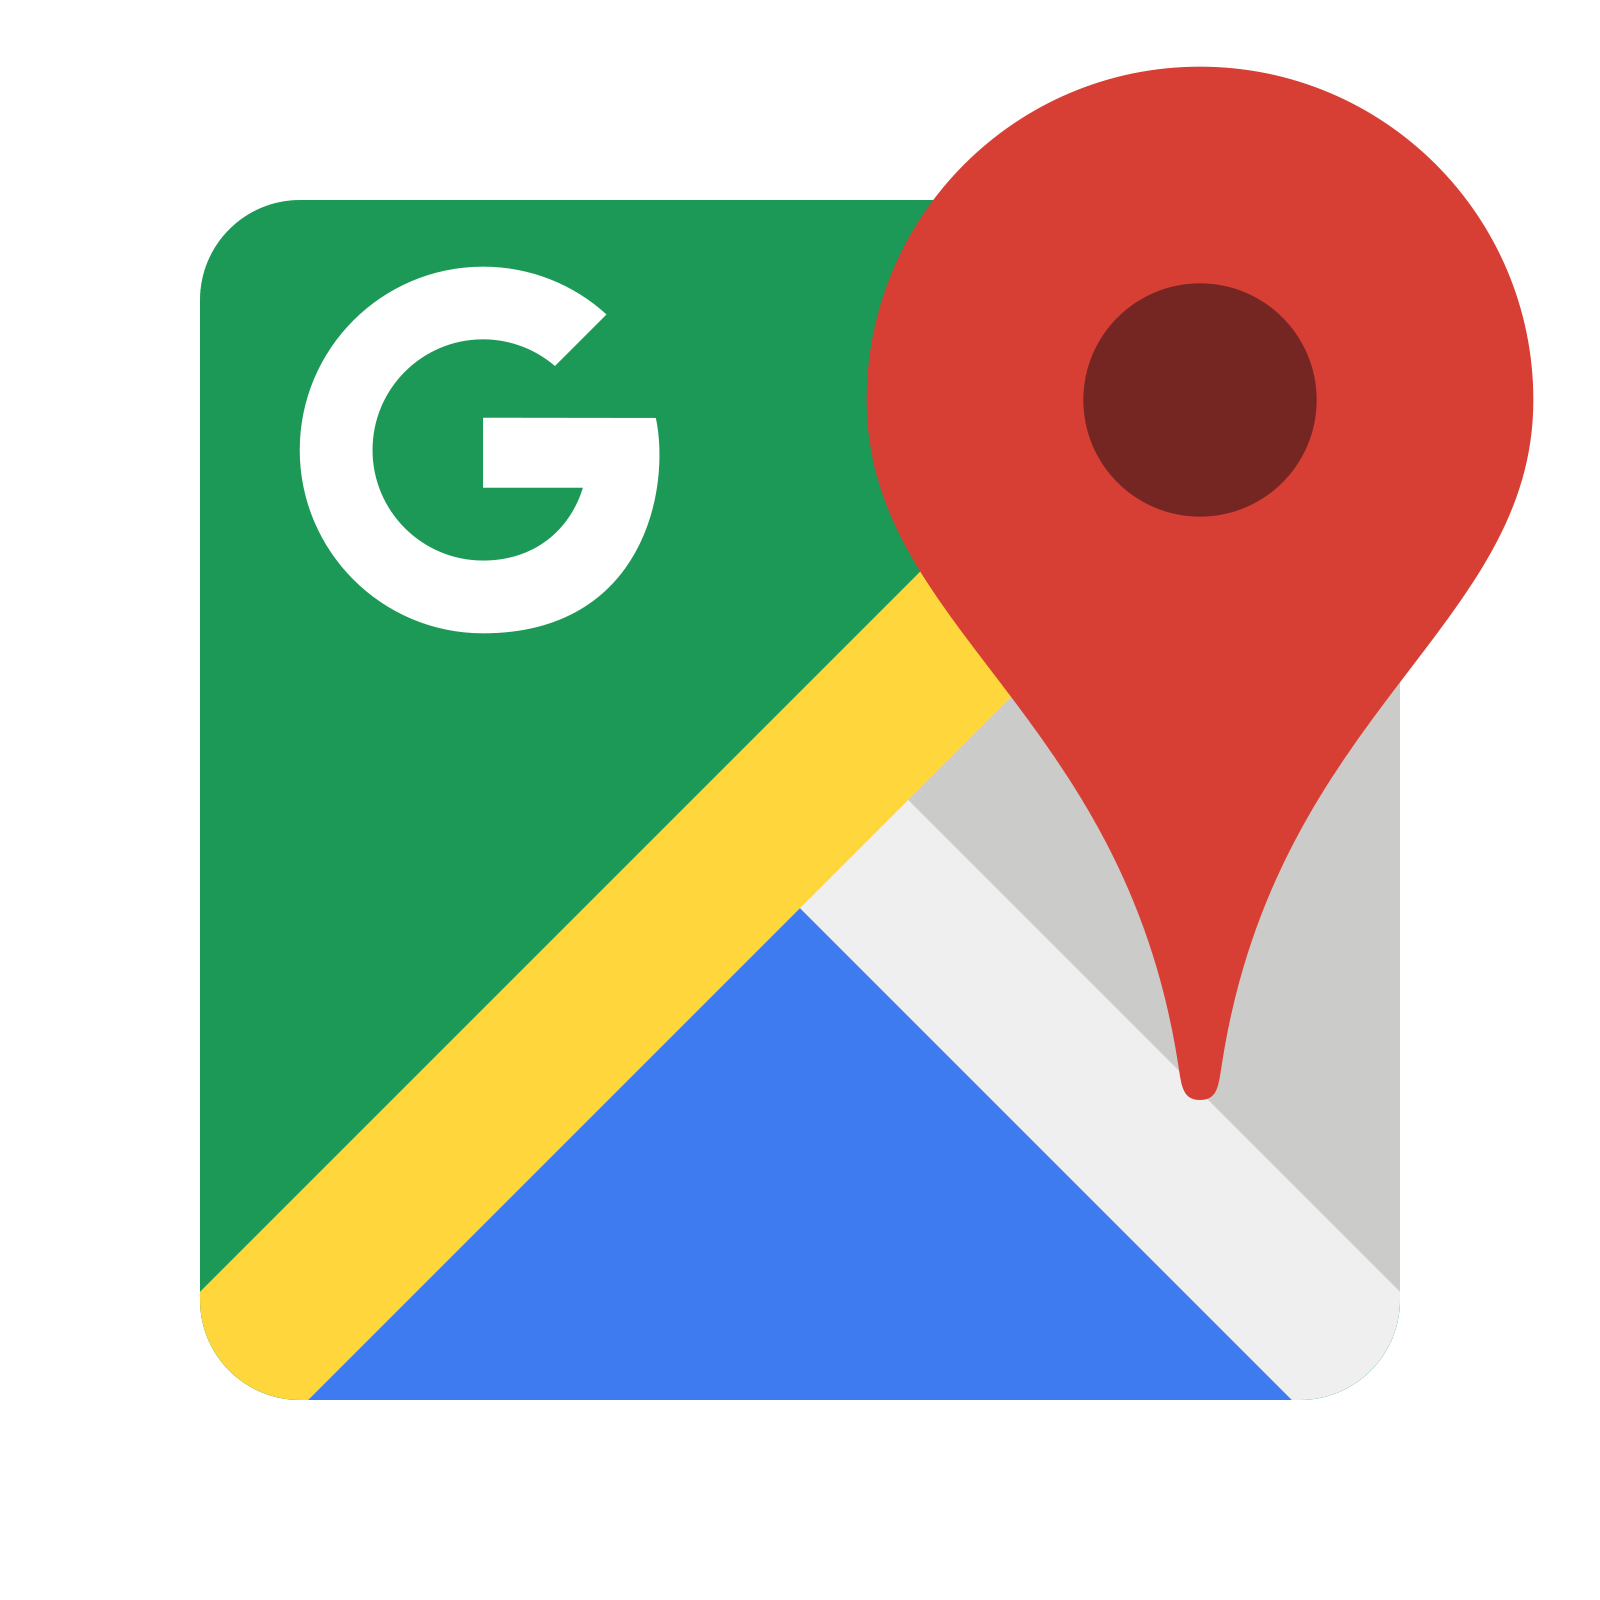 lavka kabani on google maps